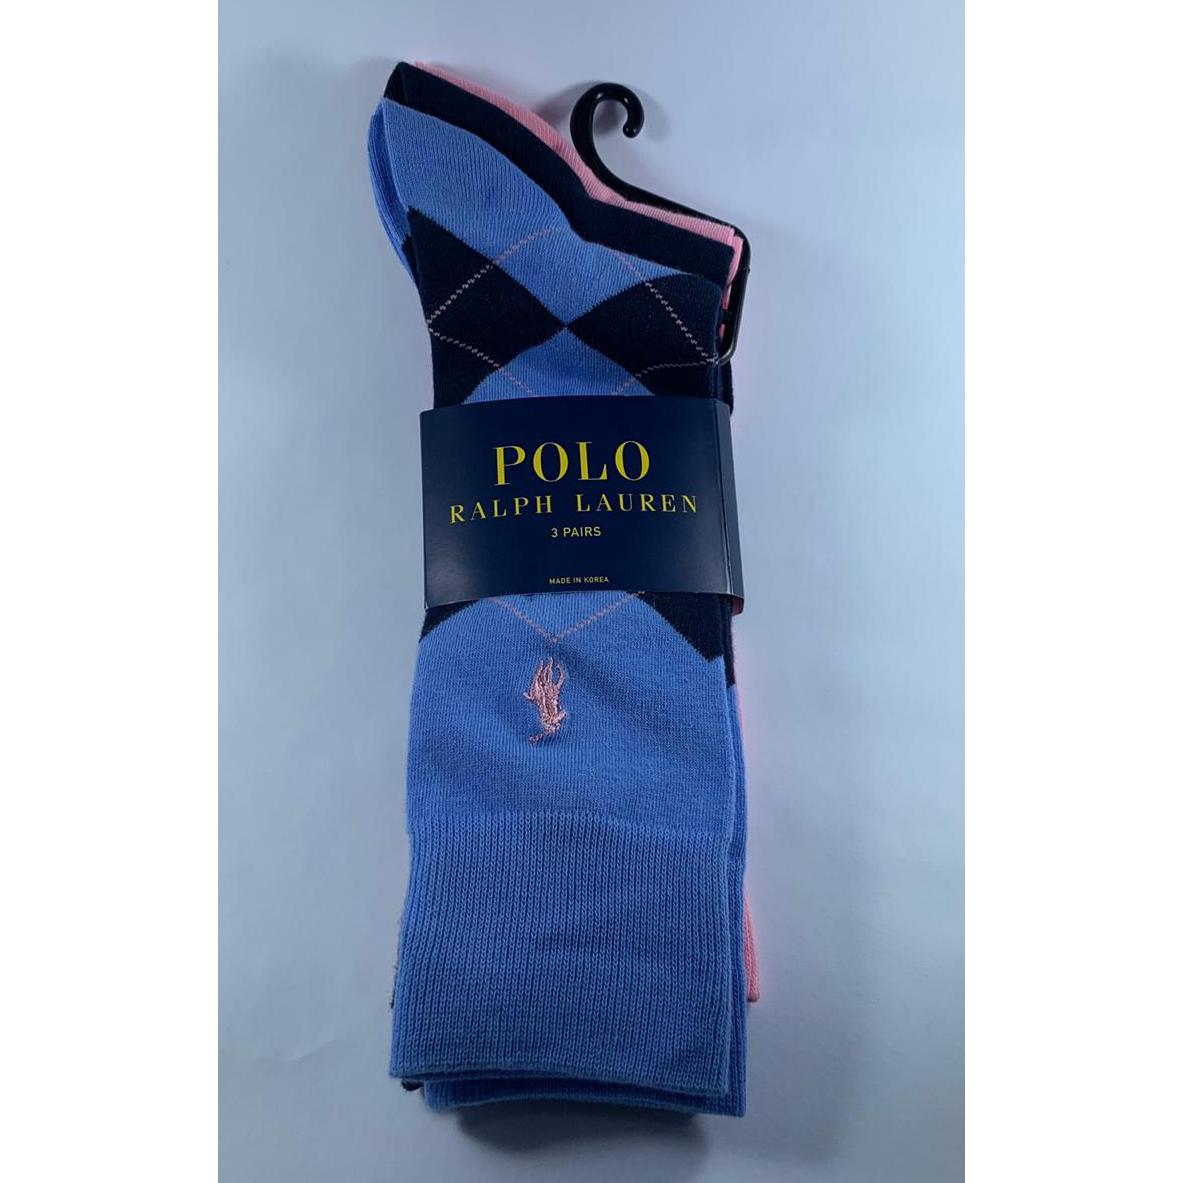 Medias Hombre - Polo - Color Celeste, Azul y Rosado - The Gift Shop Costa Rica